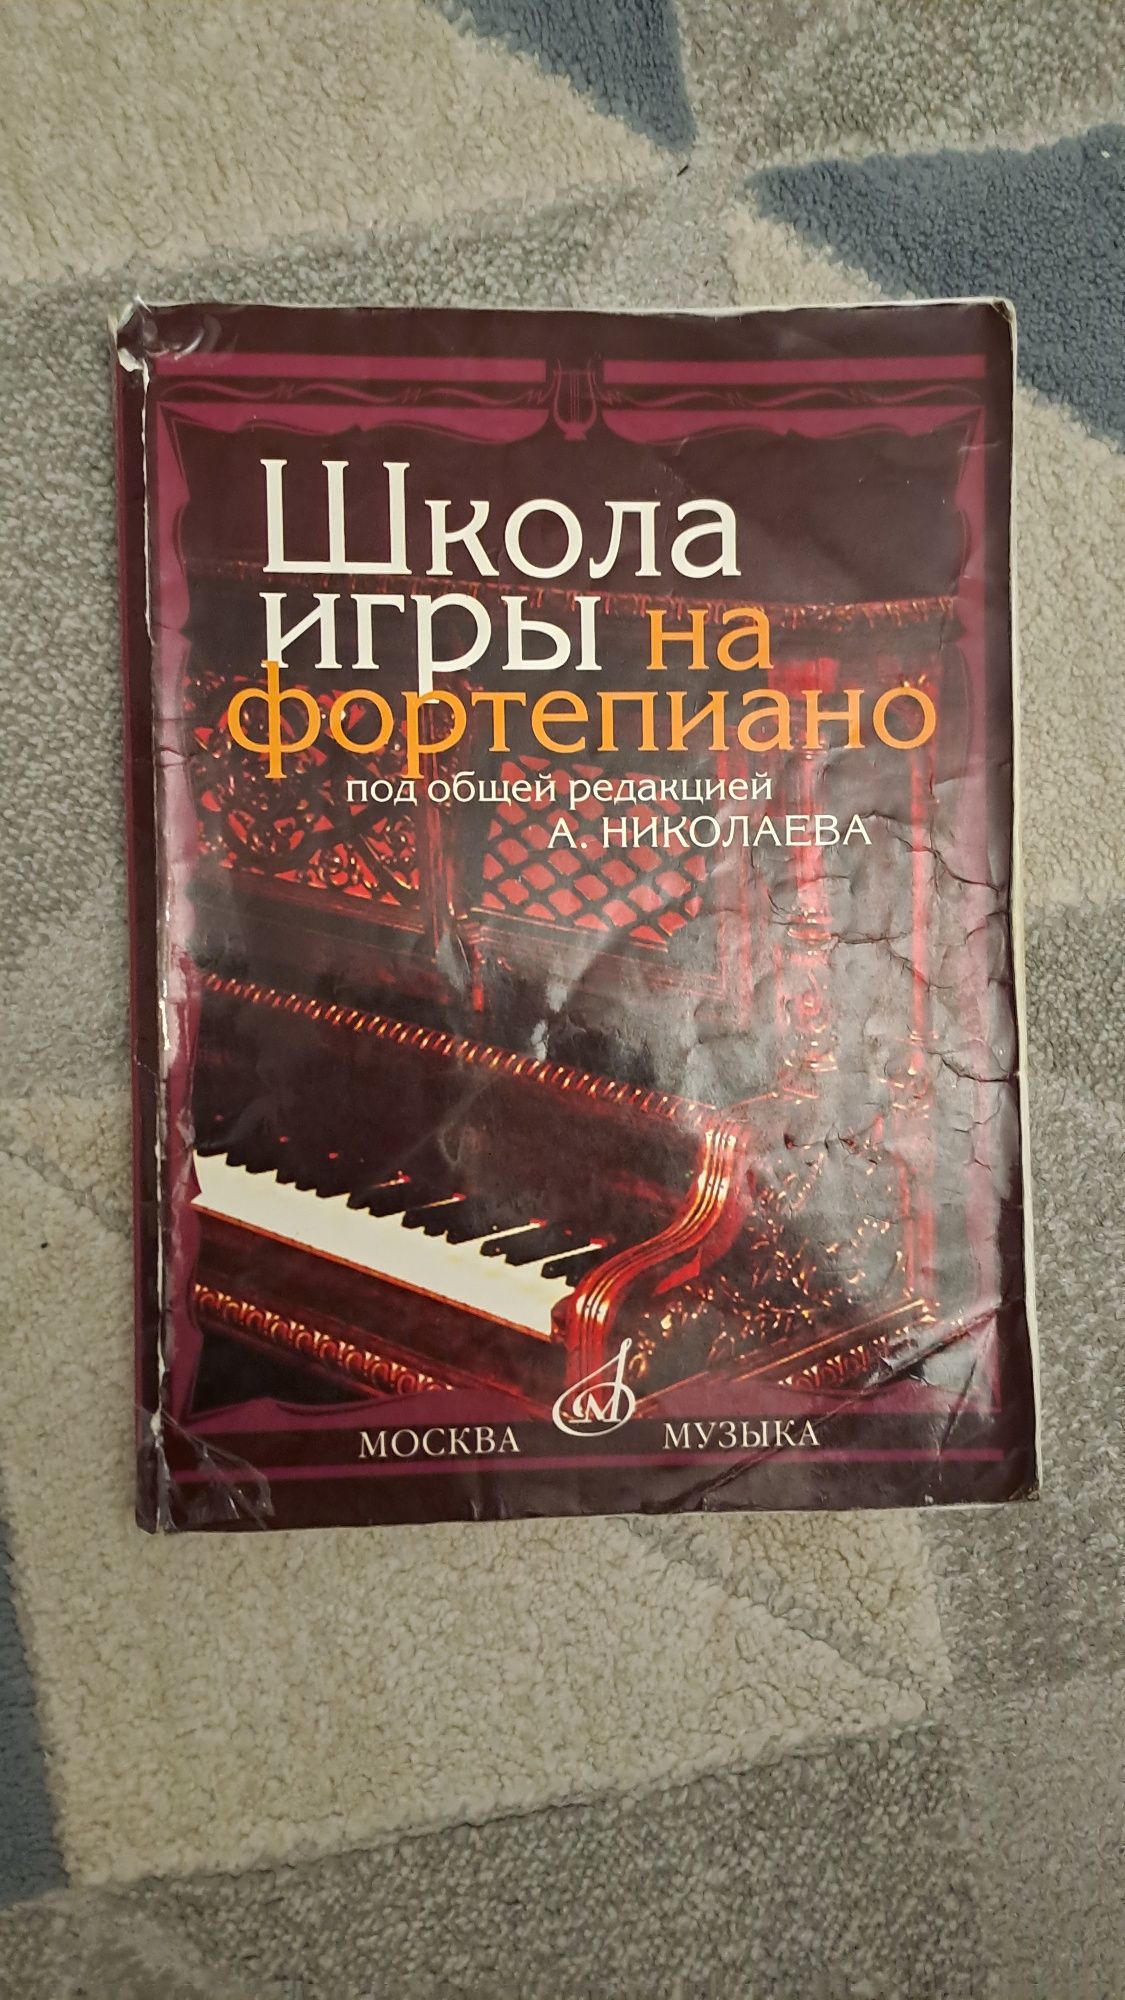 Продам книгу для игры на фортепиано